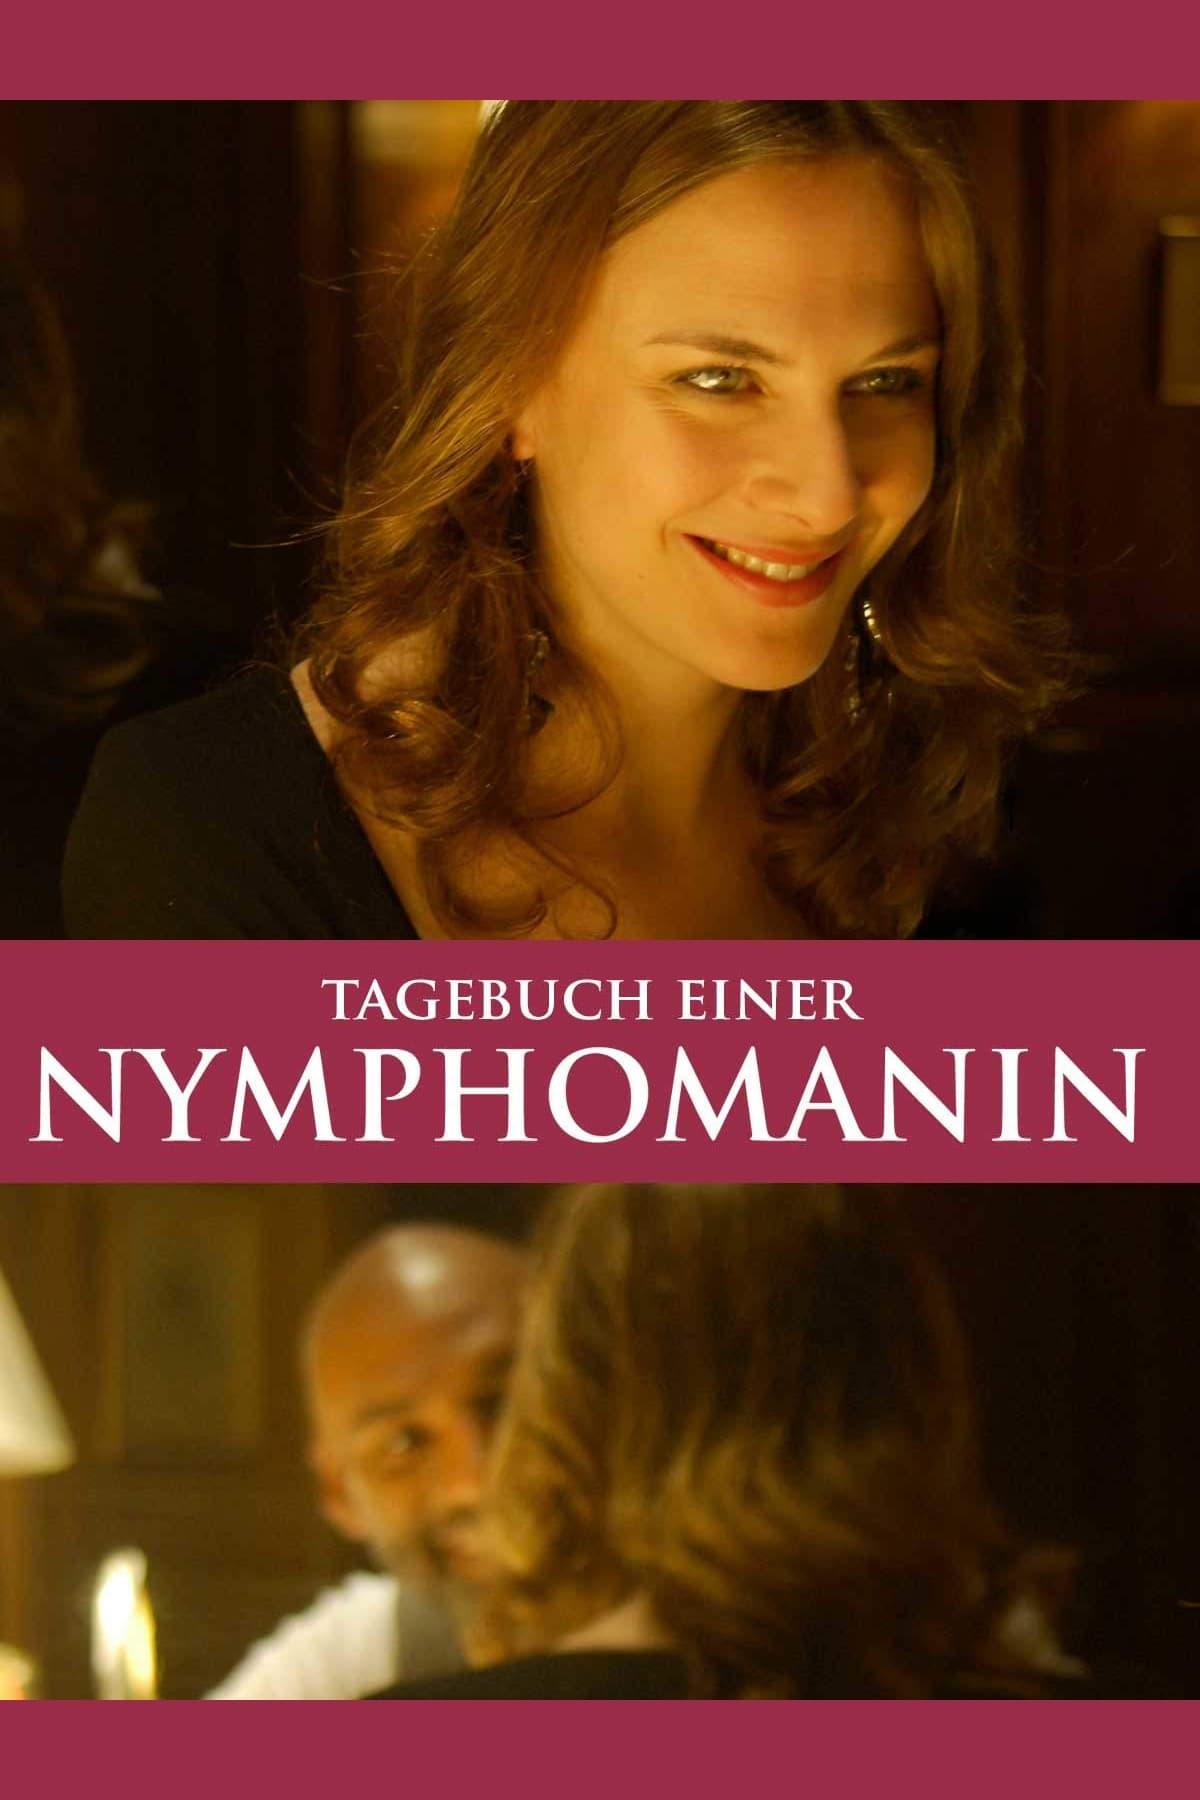 Tagebuch einer Nymphomanin poster